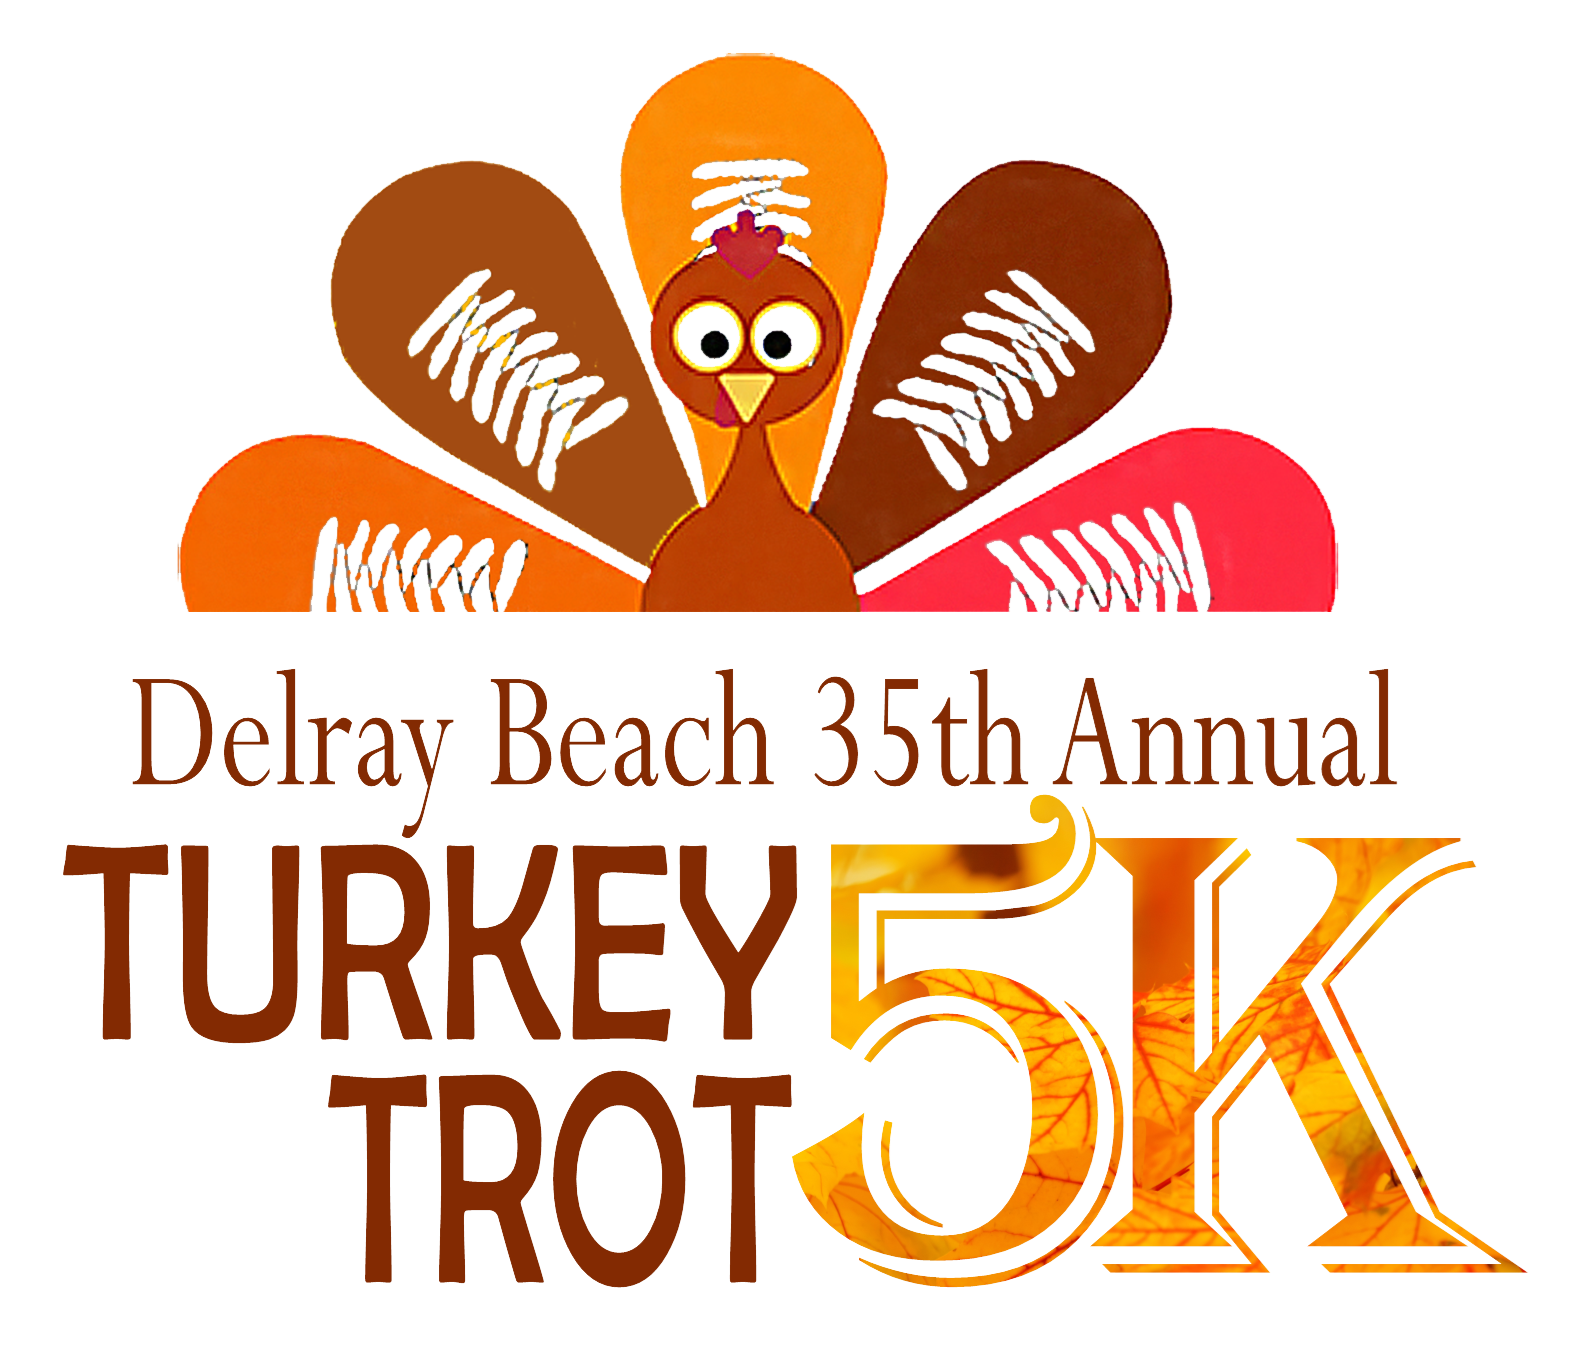 City of Delray Beach Turkey Trot